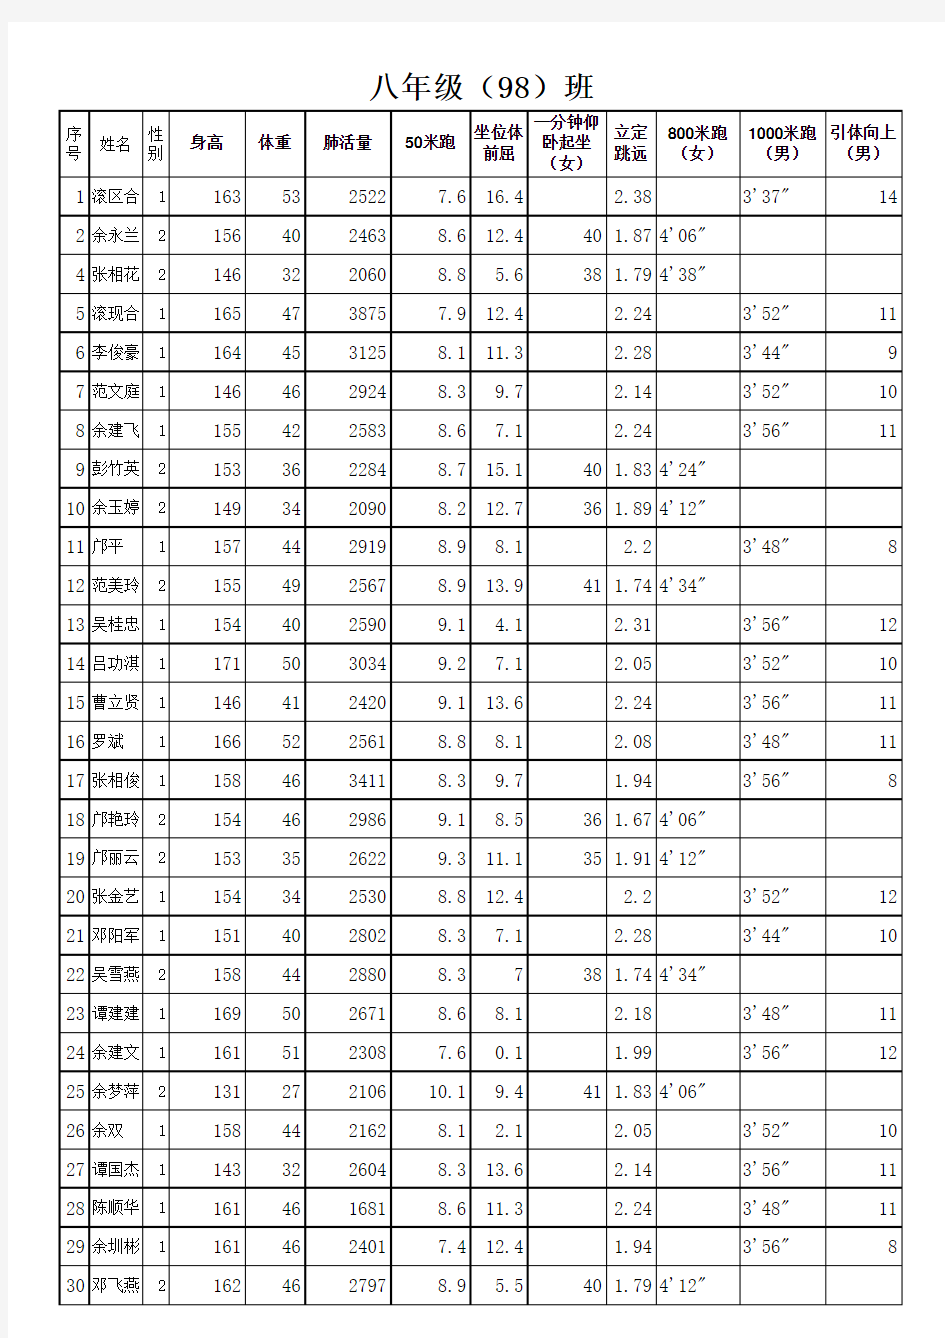 98班  2014下国家体育测试记录表